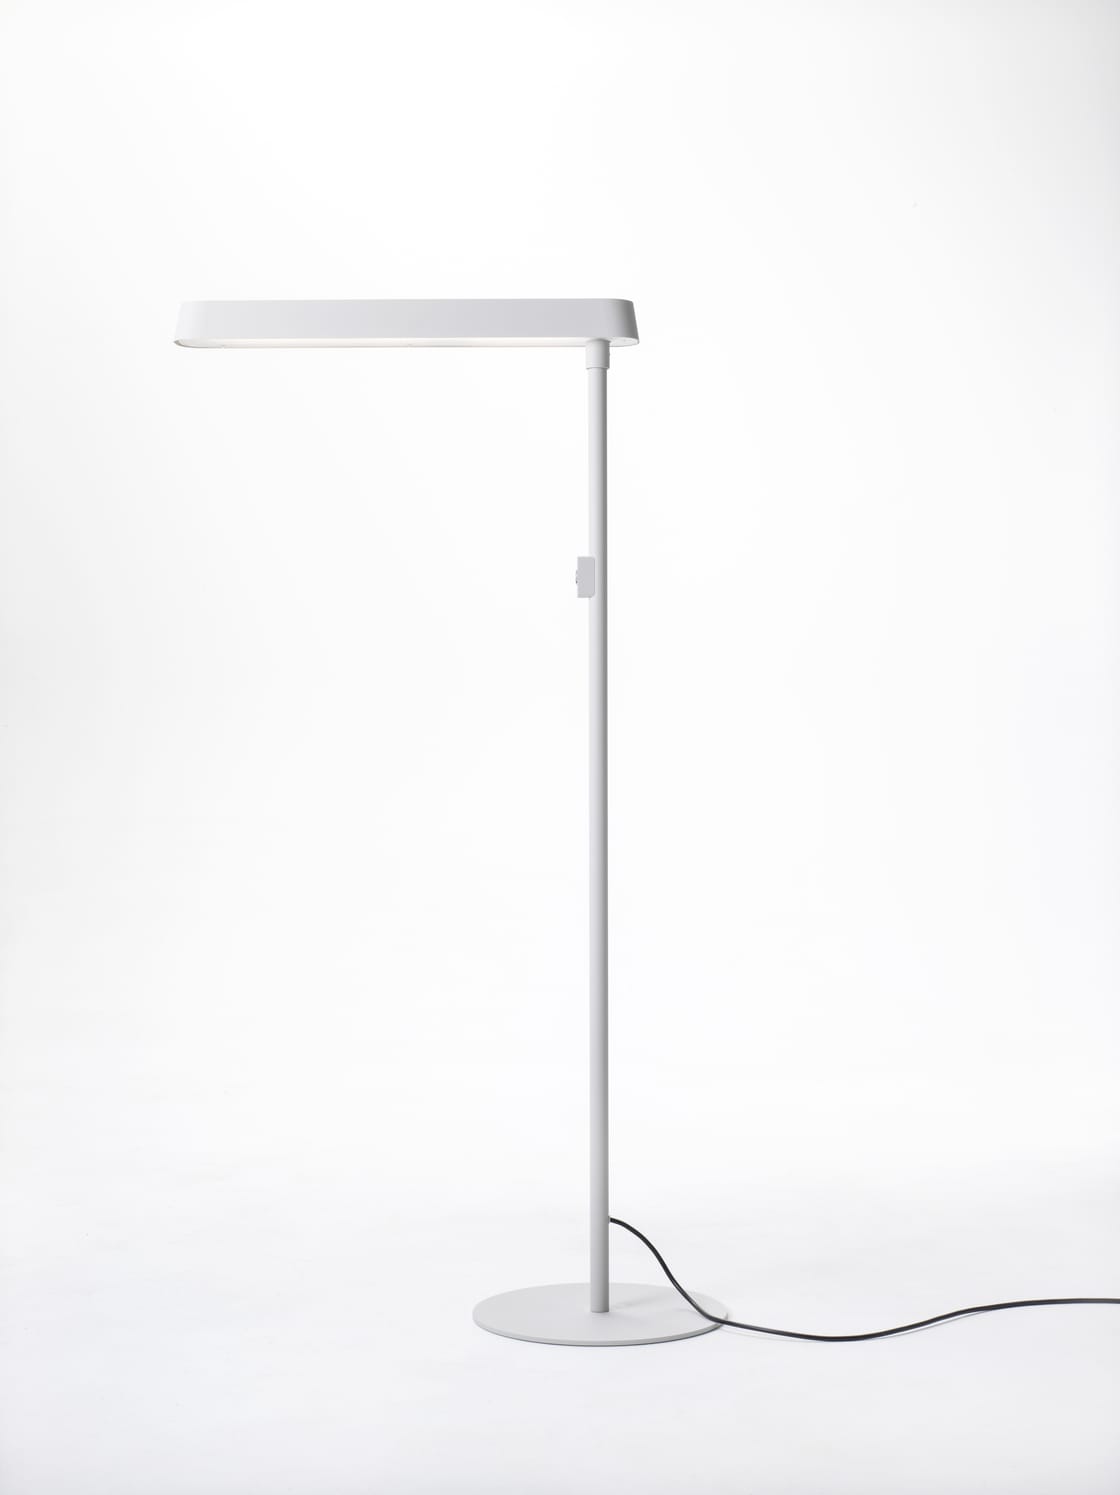 Short standing floor luminaire, signal white powder coated